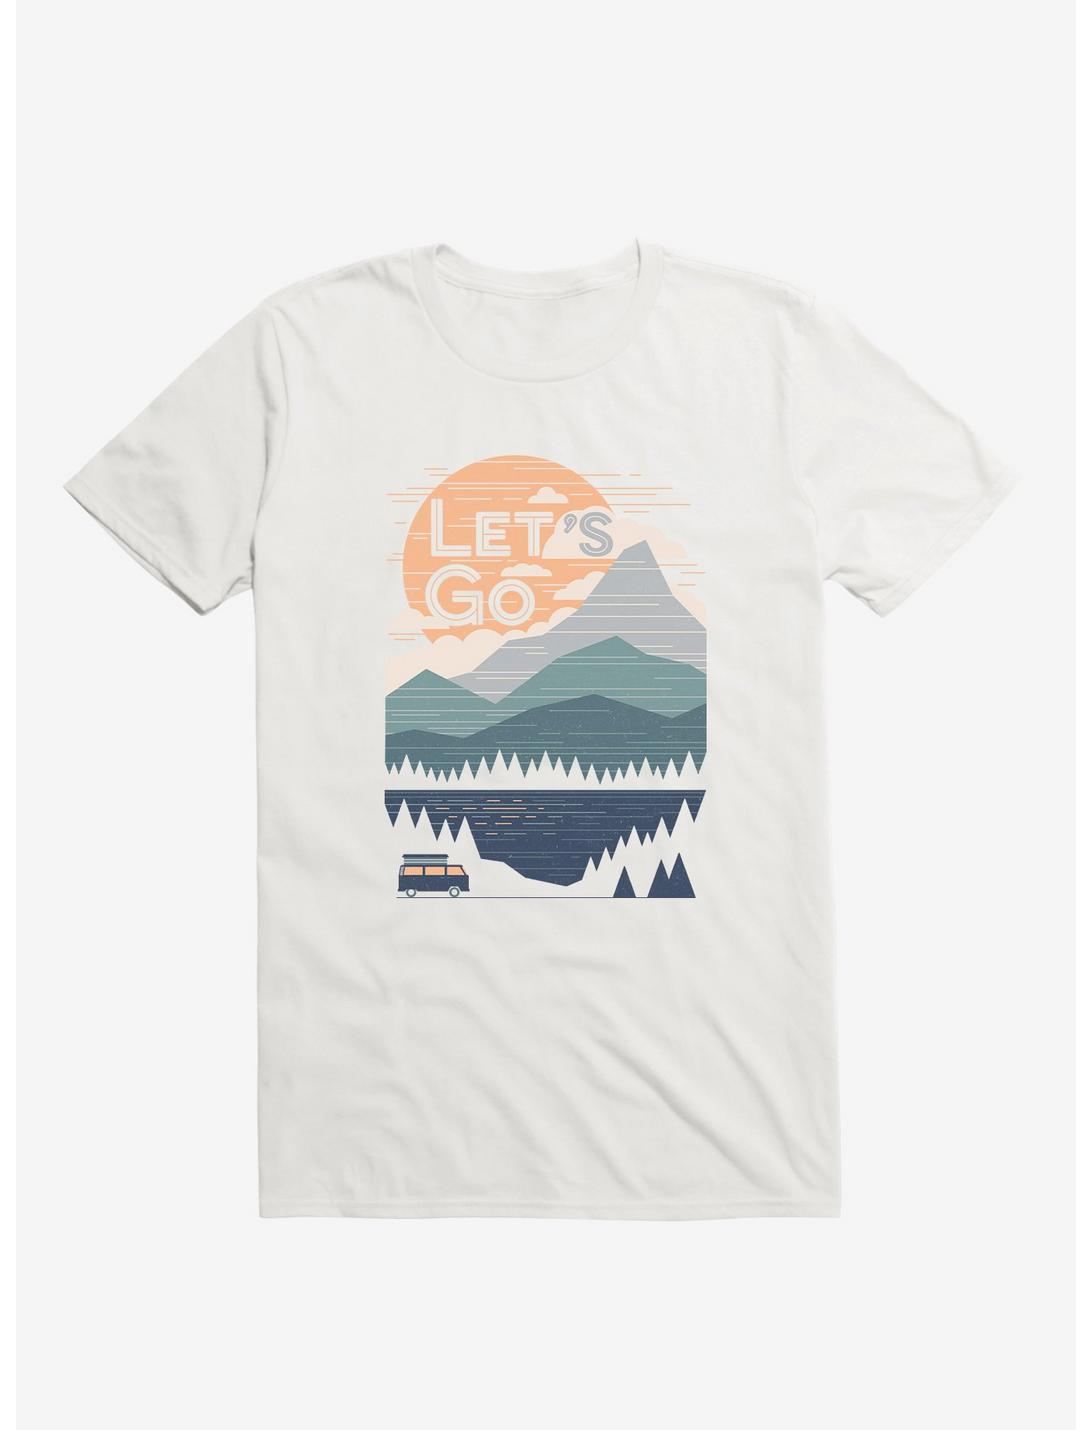 Let's Go Mountains Lake Tree White T-Shirt, WHITE, hi-res